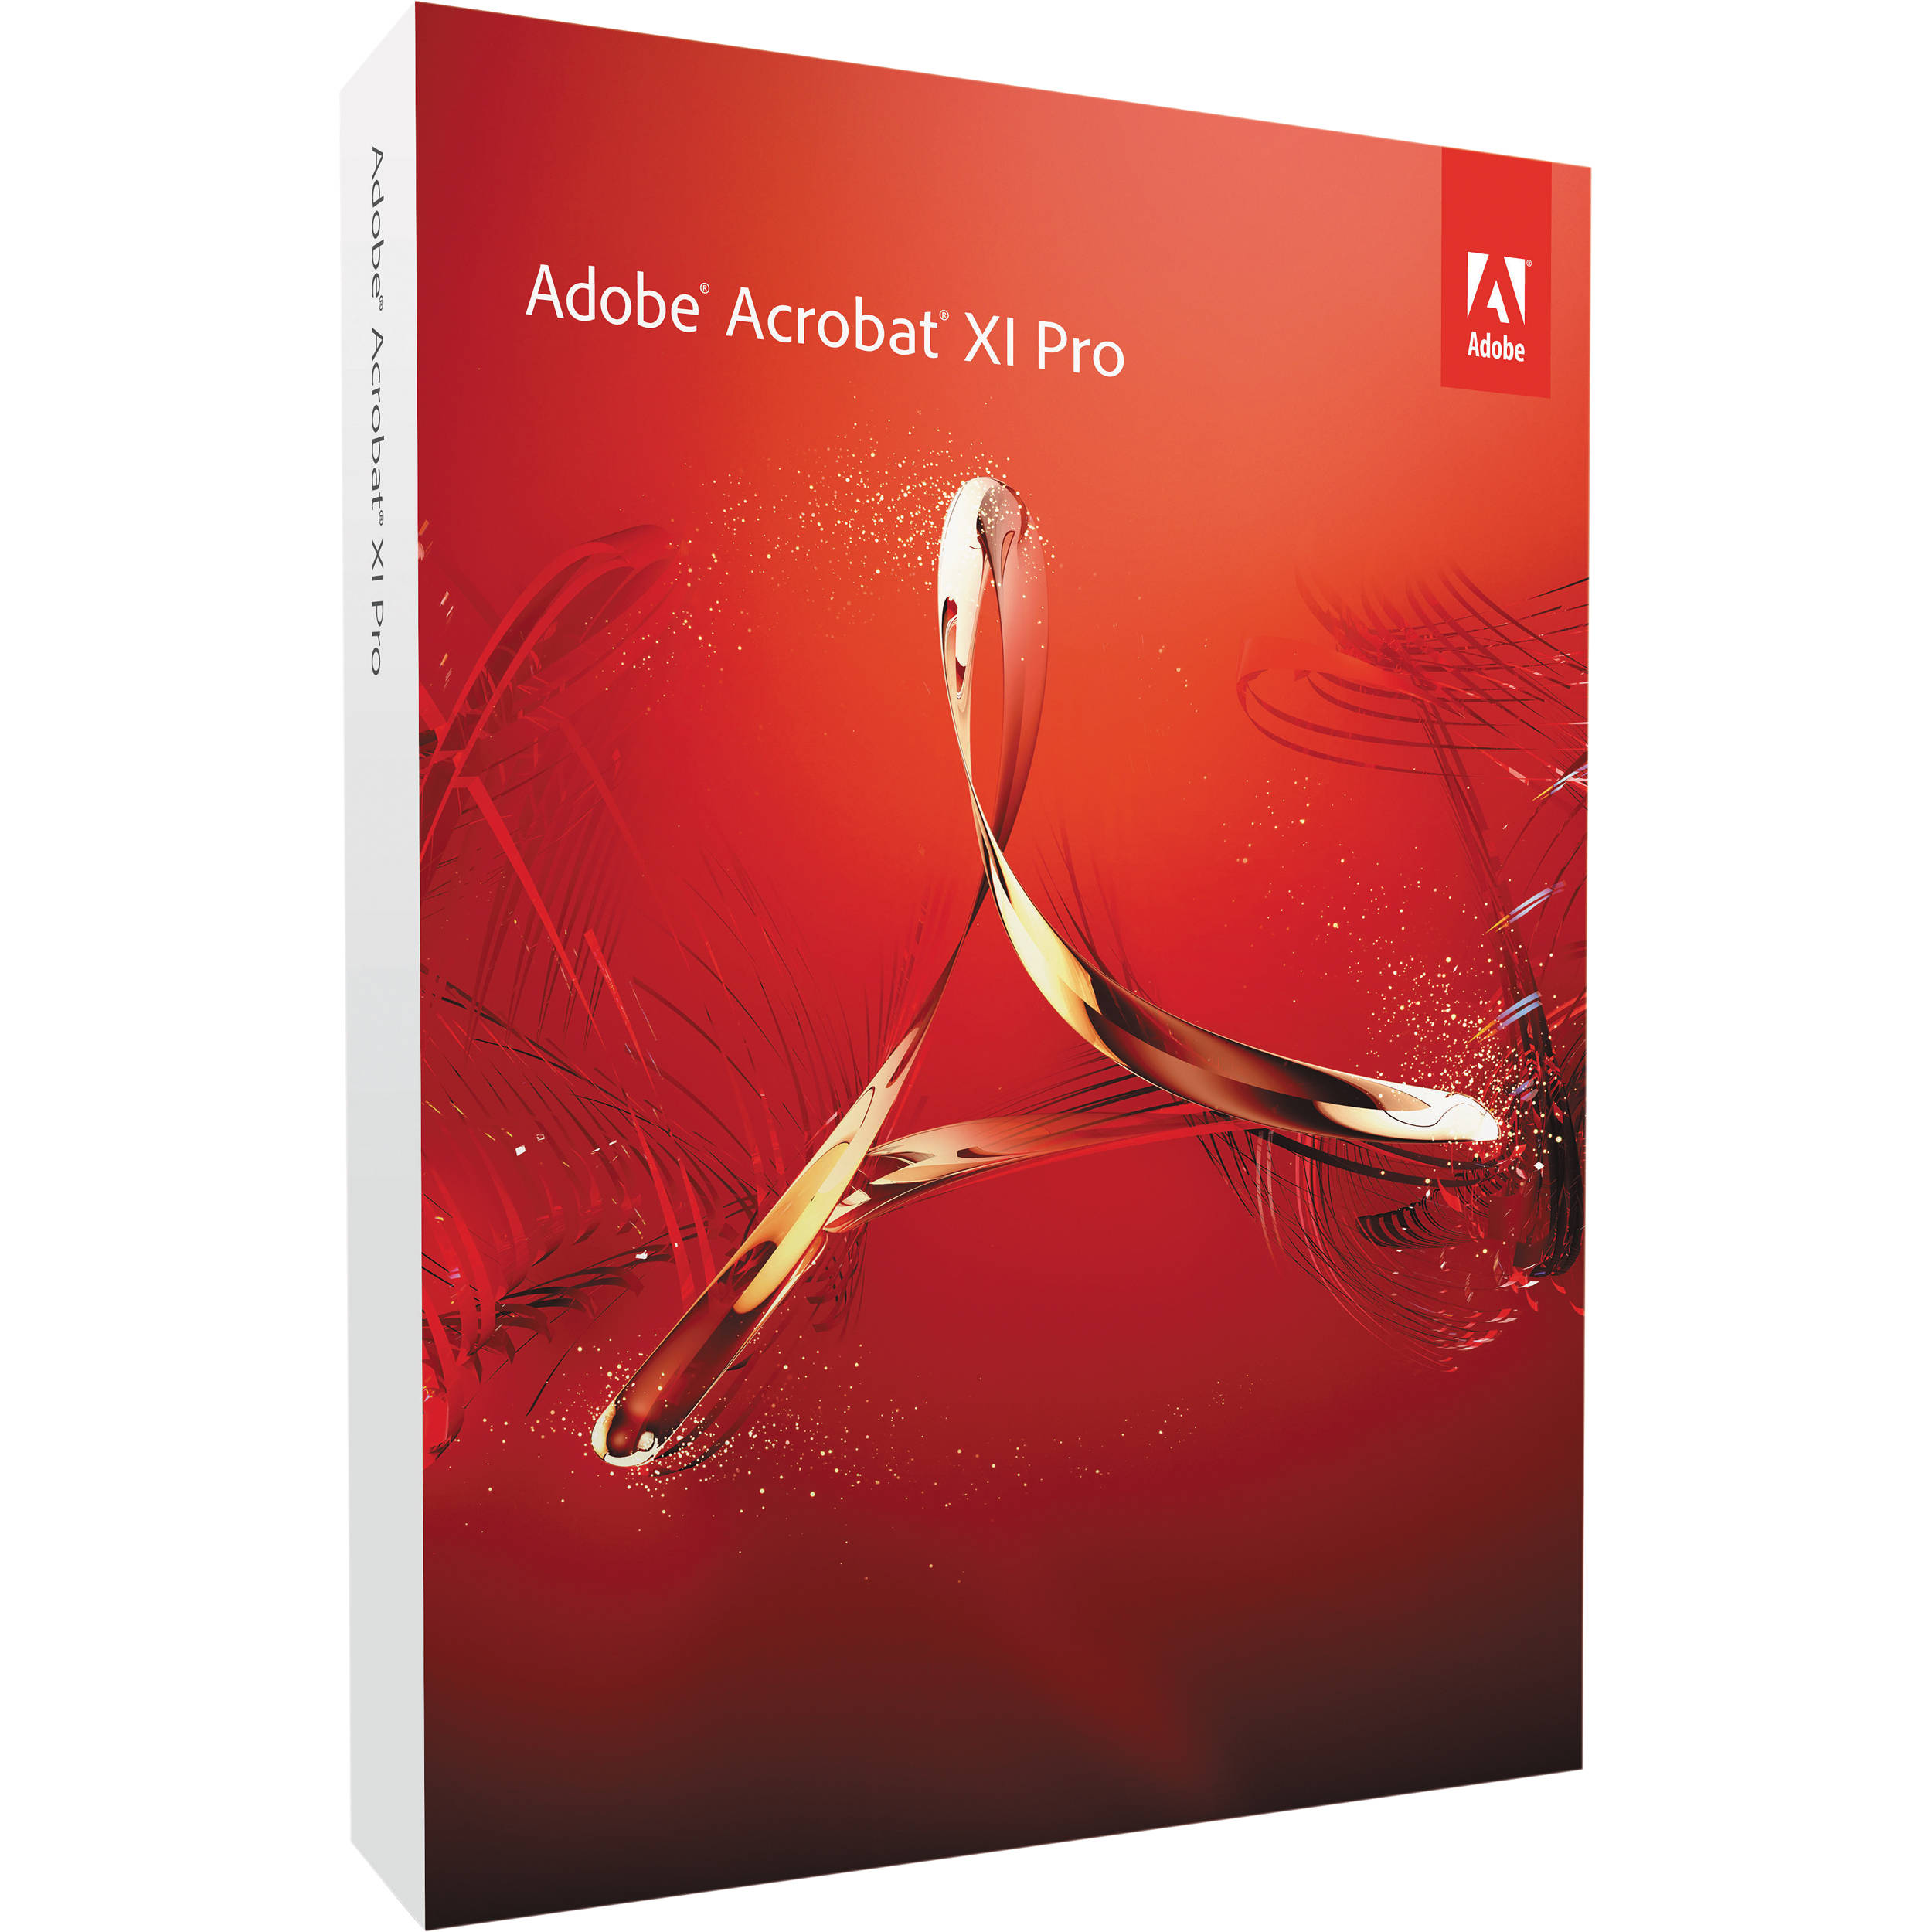 Adobe premiere pro download mac